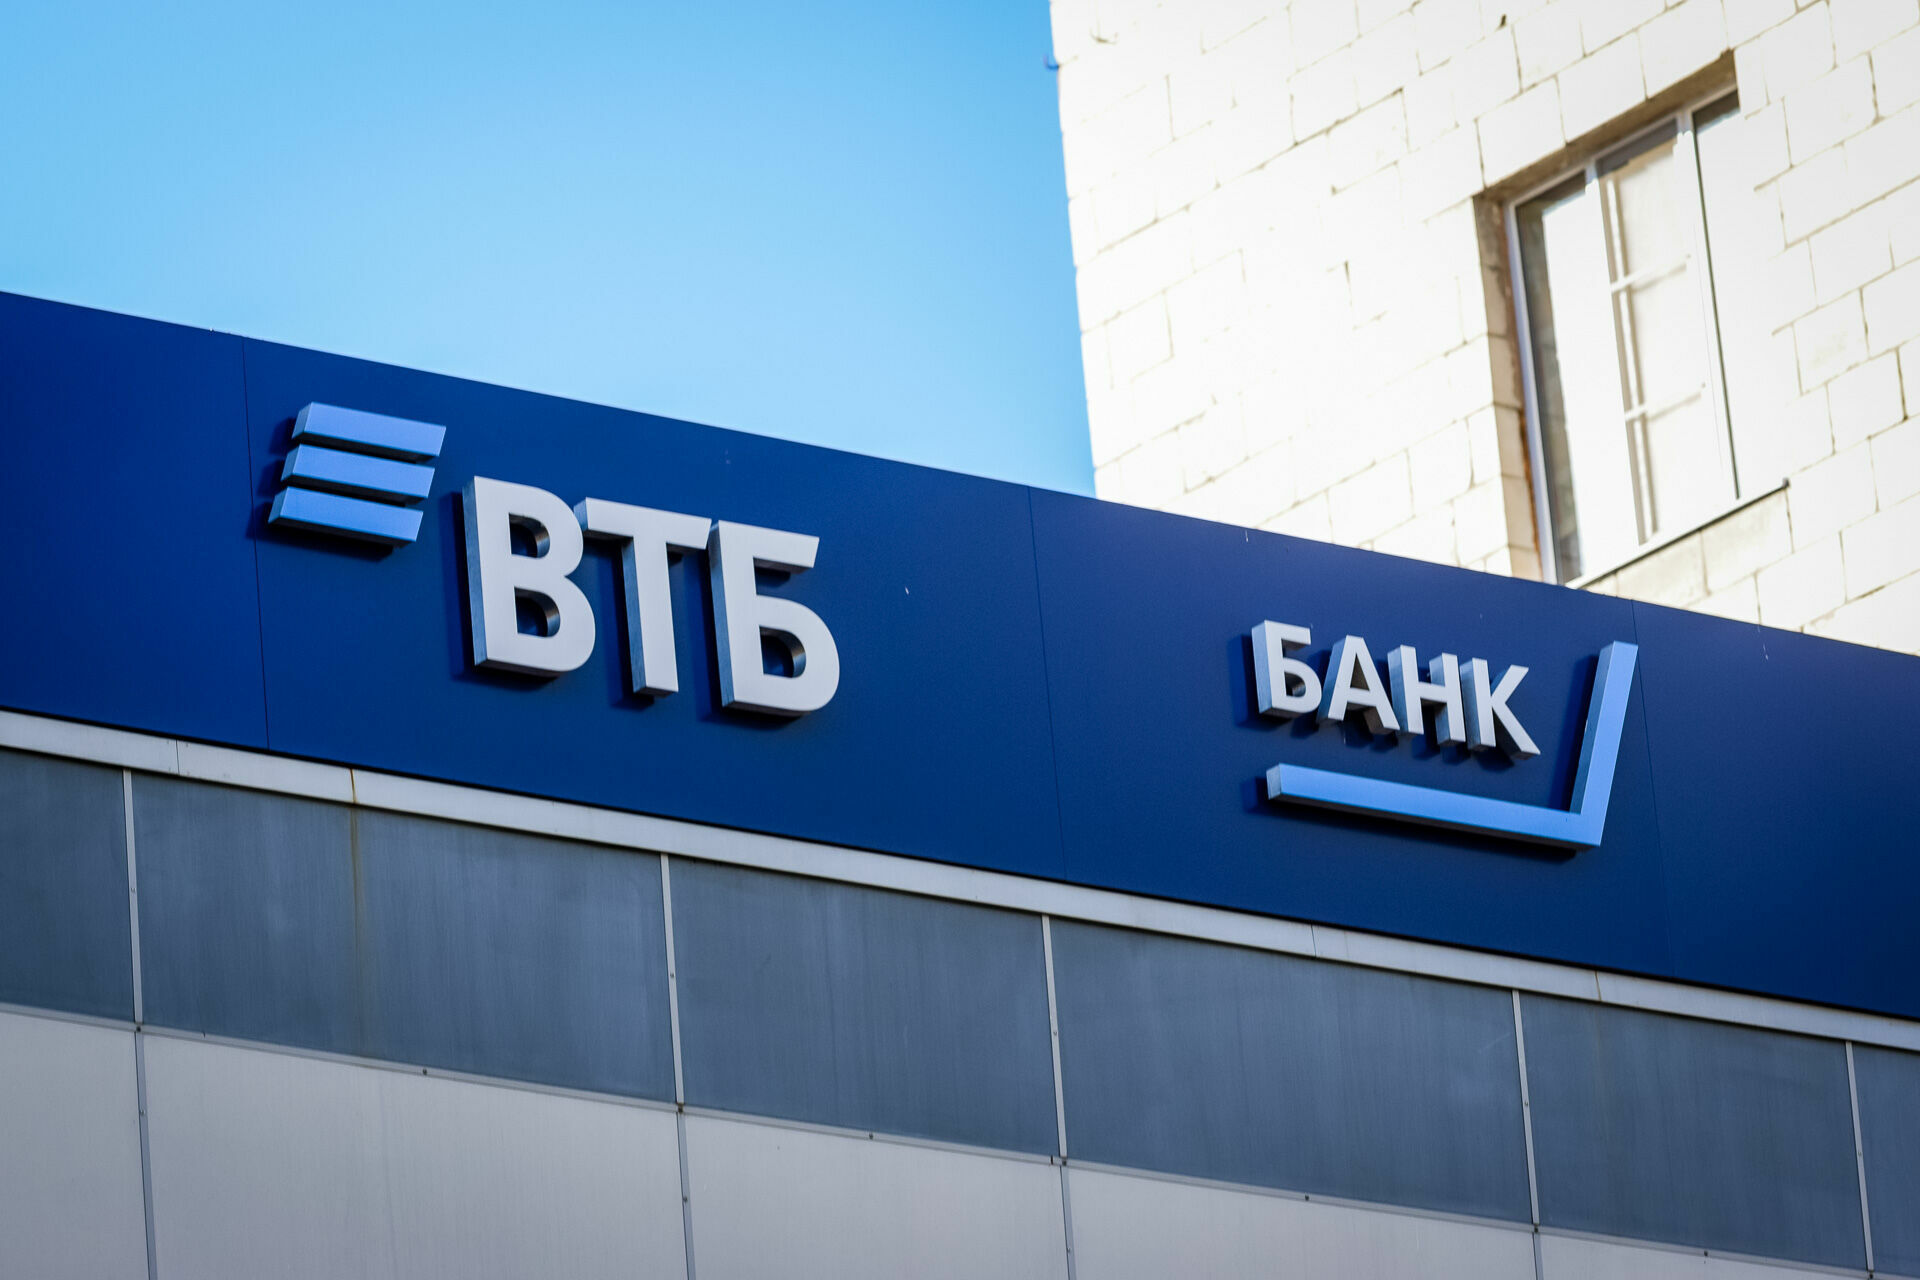 ВТБ в Республике Карелия выдал более 300 млн рублей ипотеки в апреле